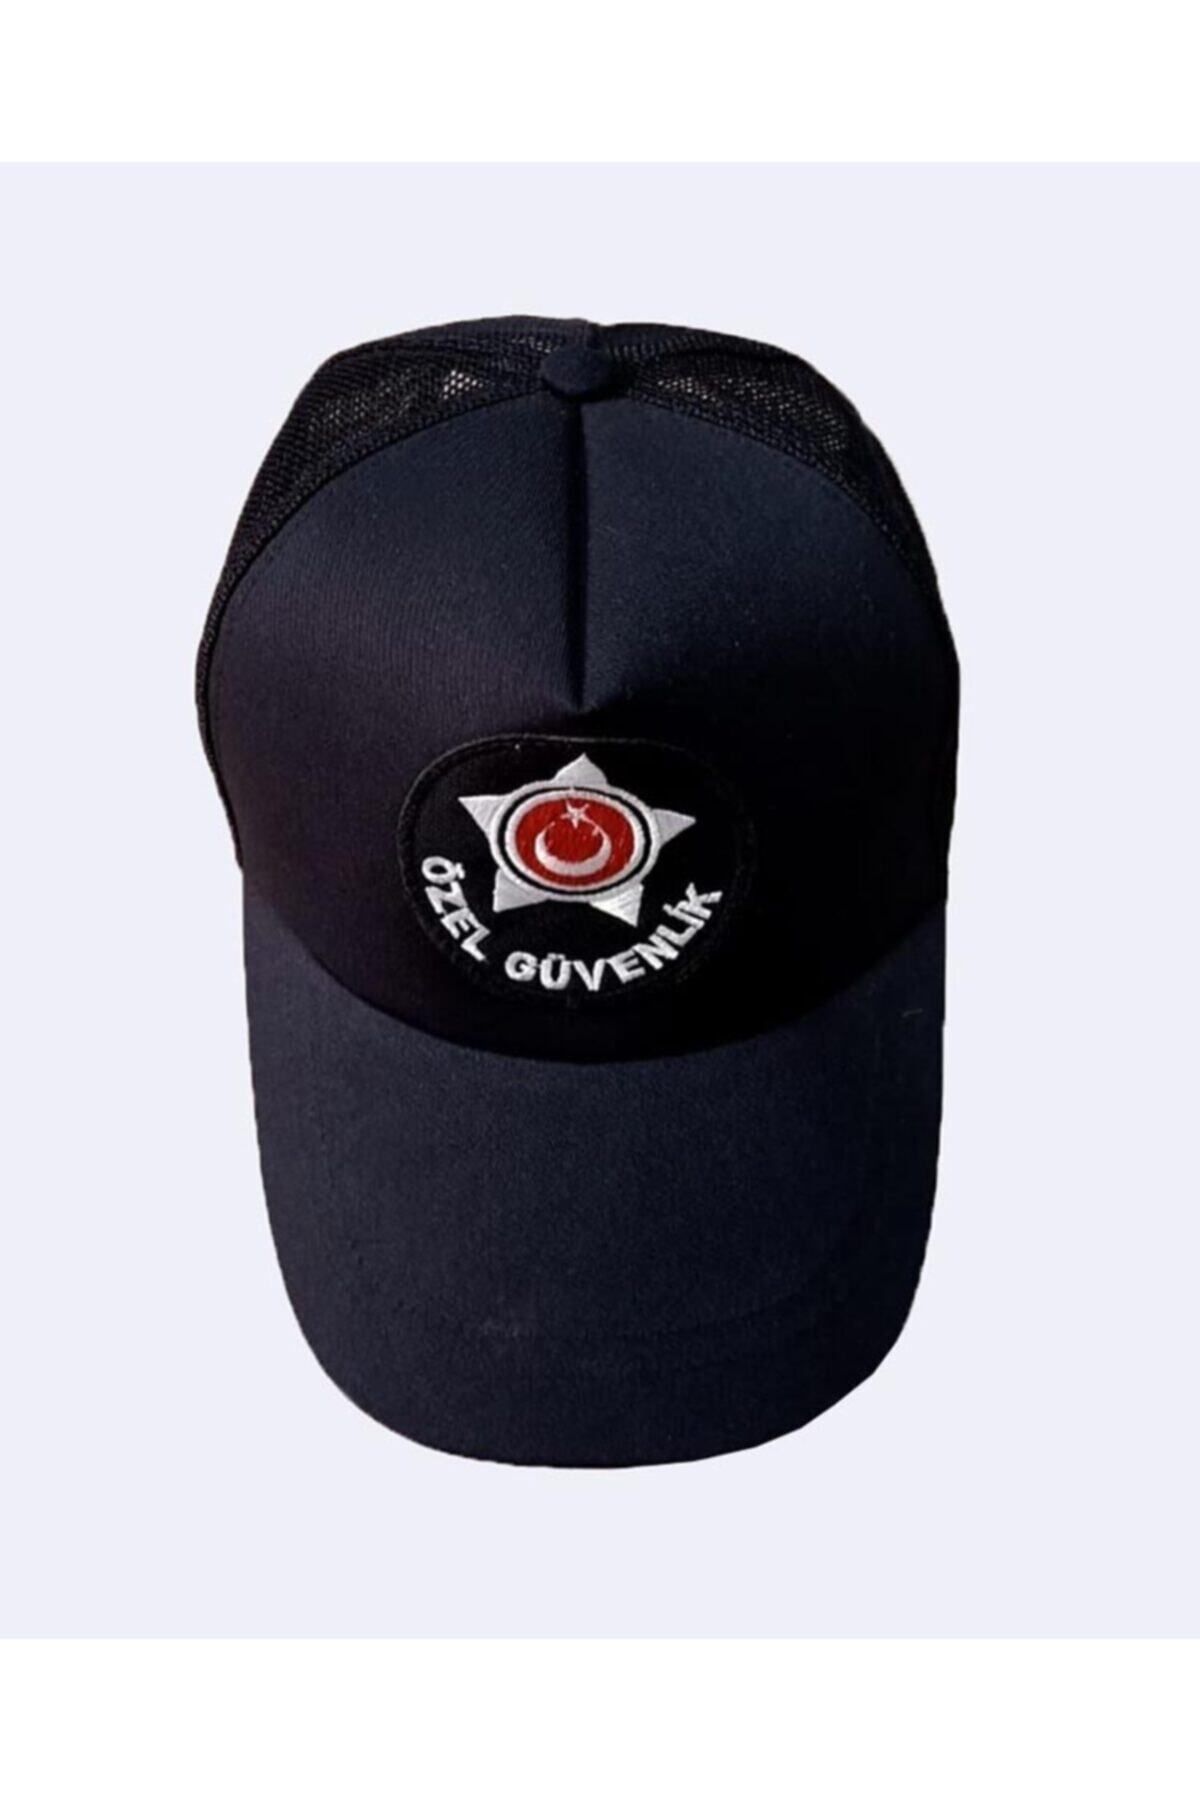 LEADER TRADE Özel Güvenlik Şapkası Yeni Model Fileli